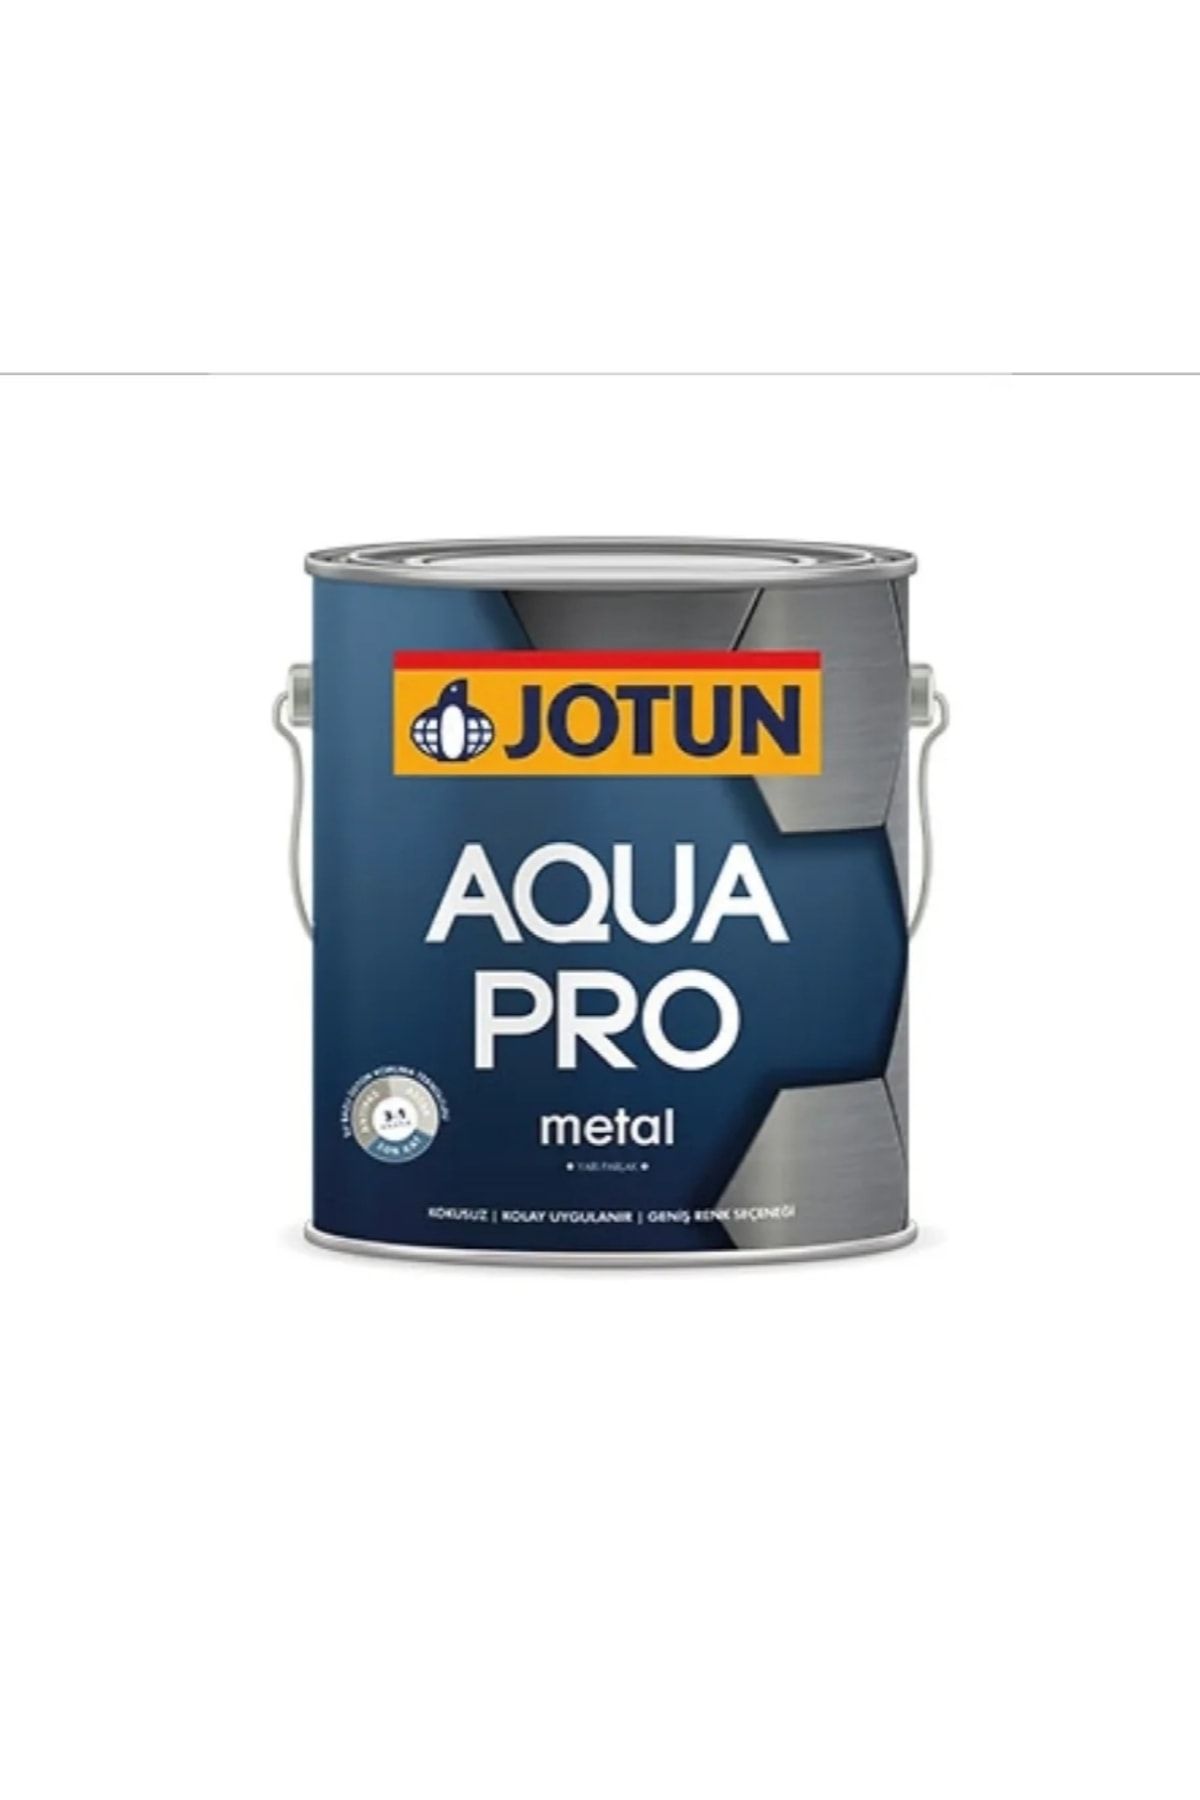 Jotun Aqua Pro Su Bazlı Metal Boyası 2.25 lt - 0486